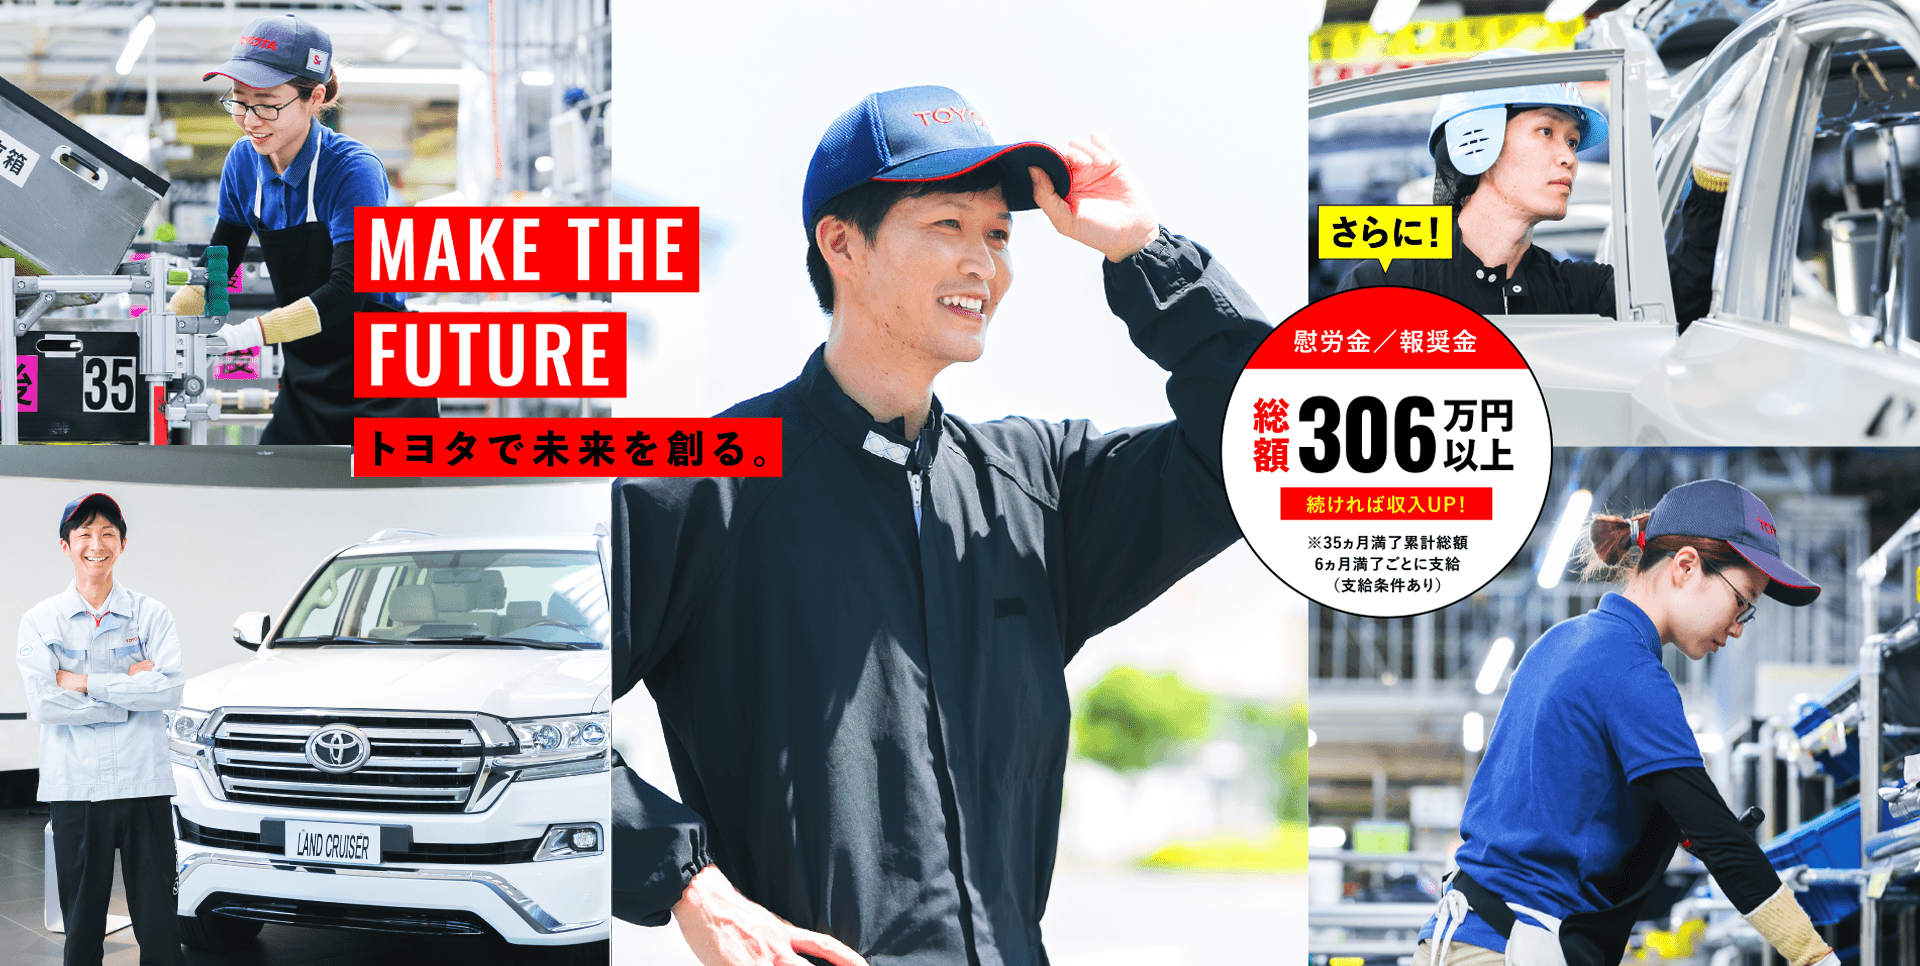 MAKE THE FUTURE トヨタで未来を創る。 PC版